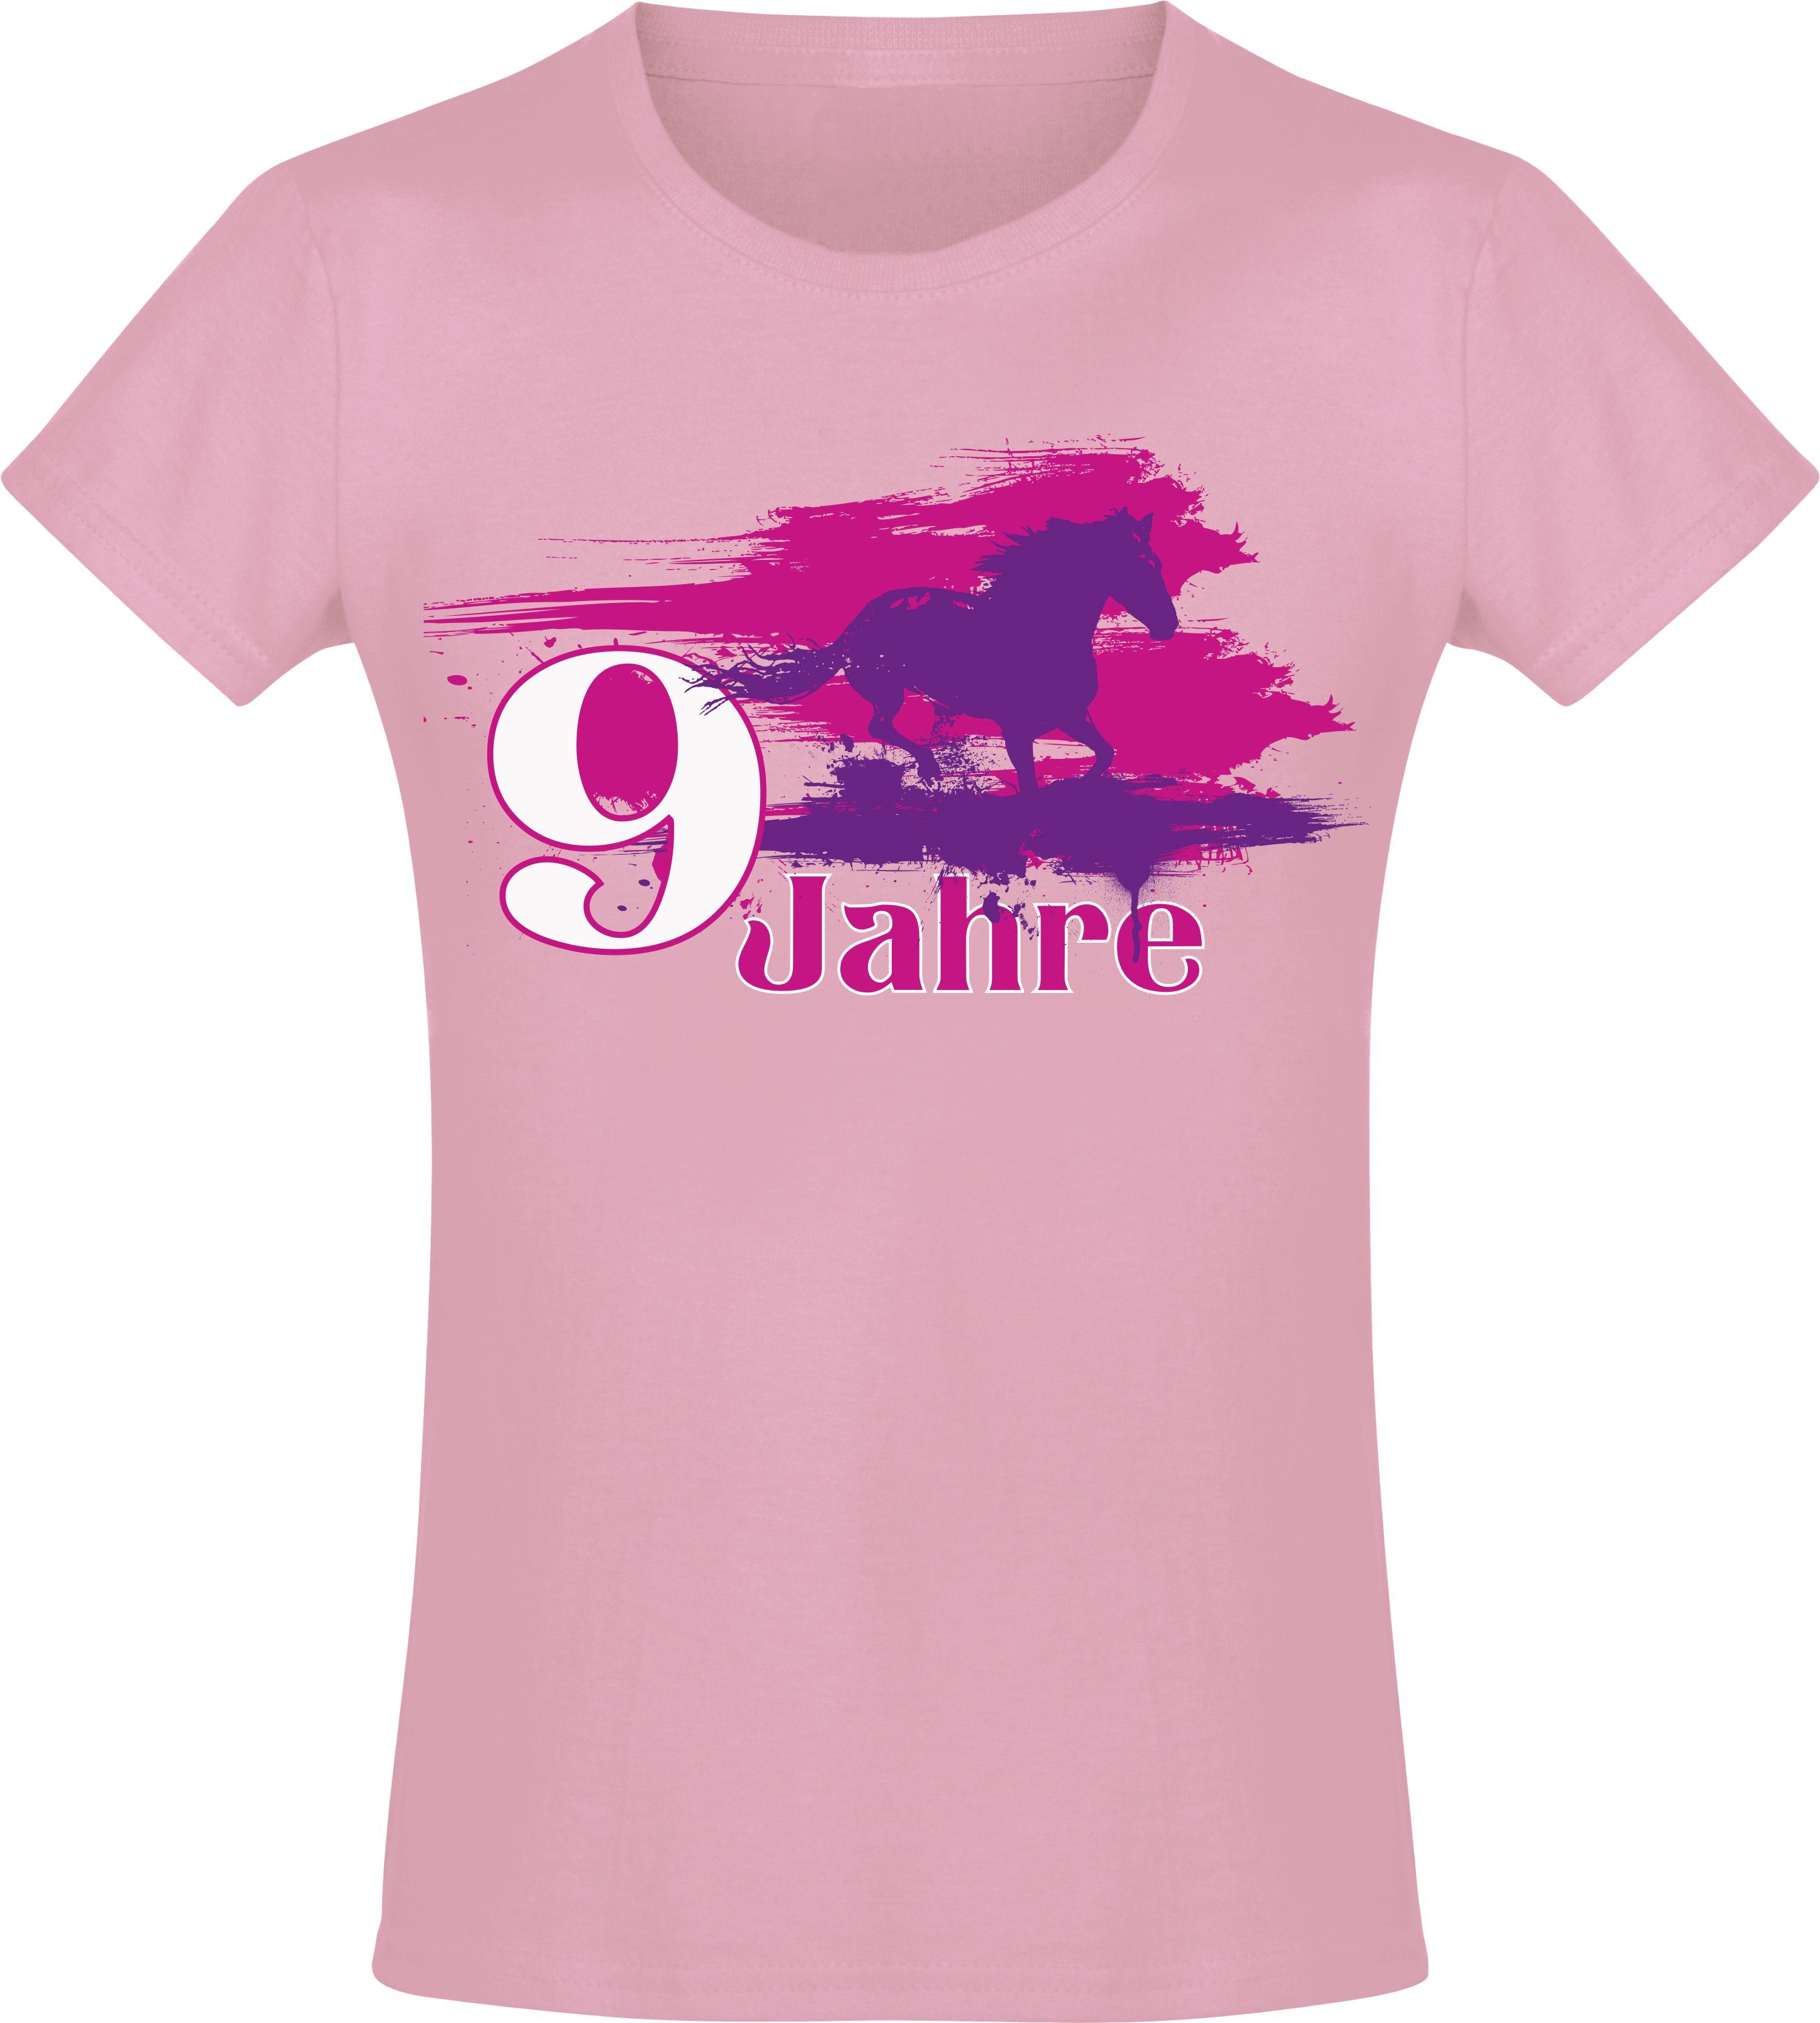 Baddery Print-Shirt Geburtstagsgeschenk für Mädchen : Geburtstagspferd 9 Jahre, hochwertiger Siebdruck, aus Baumwolle